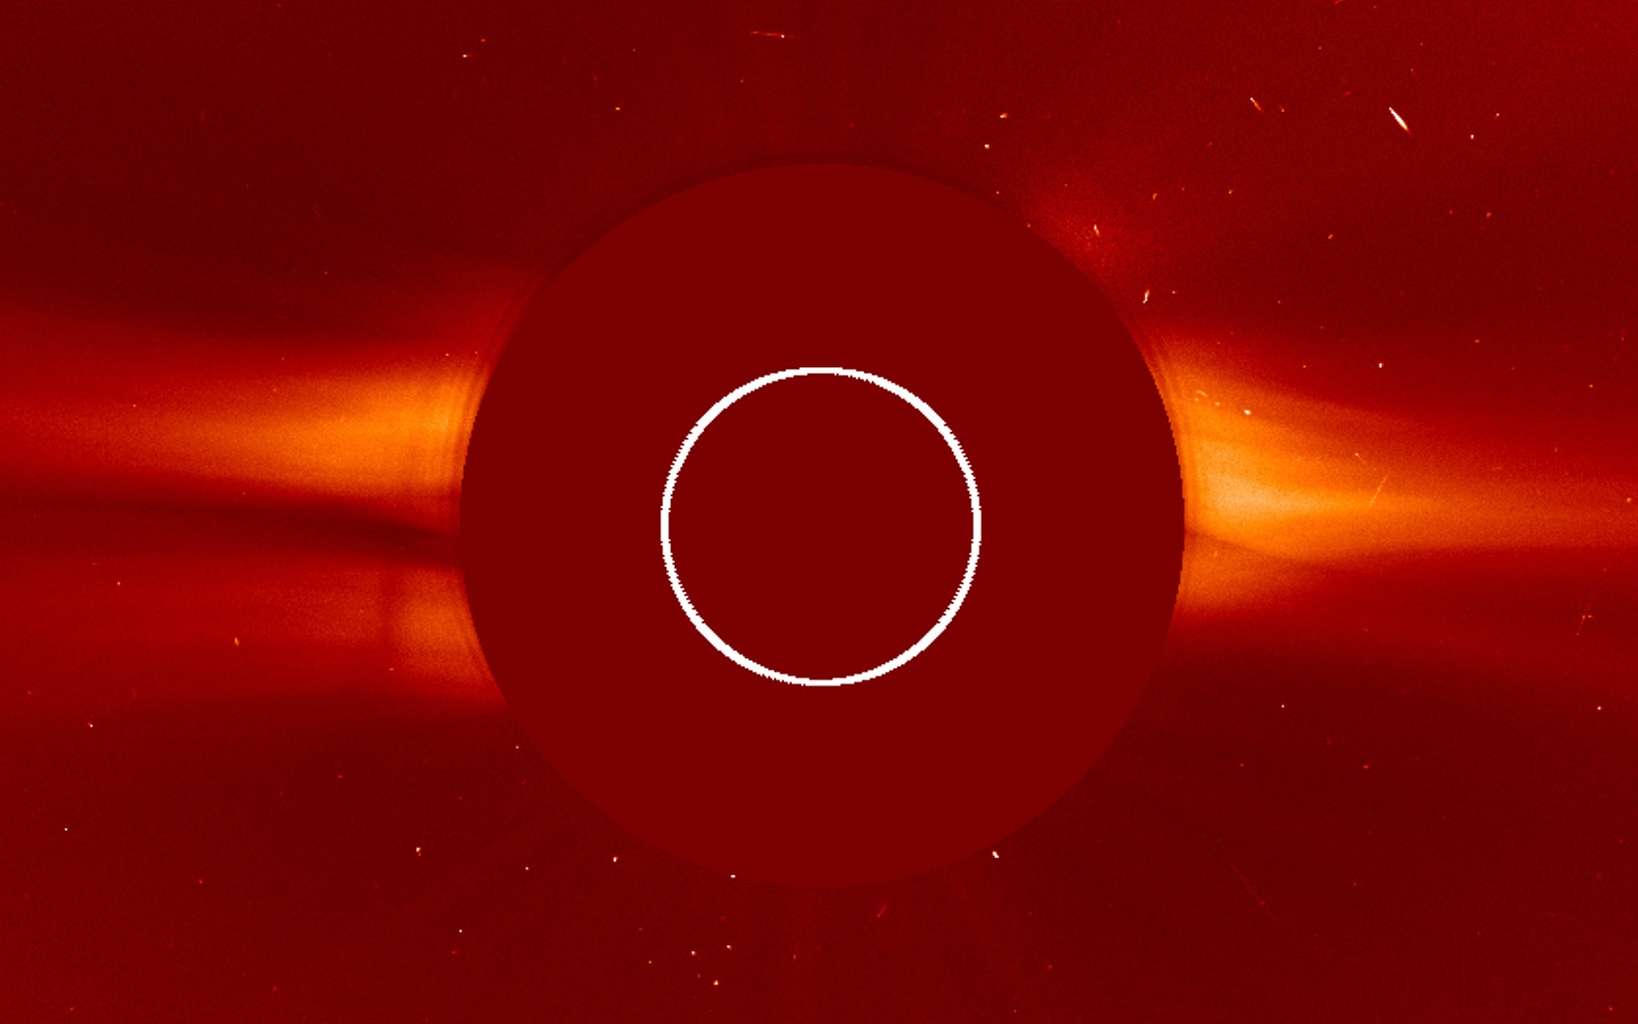 Le Soleil est au centre masqué par le coronographe Lasco C2 du satellite Soho. Image du 14 août 2020. On peut voir le vent solaire dépasser du disque. Le cercle blanc délimite la taille du Soleil. © Nasa, ESA, Soho